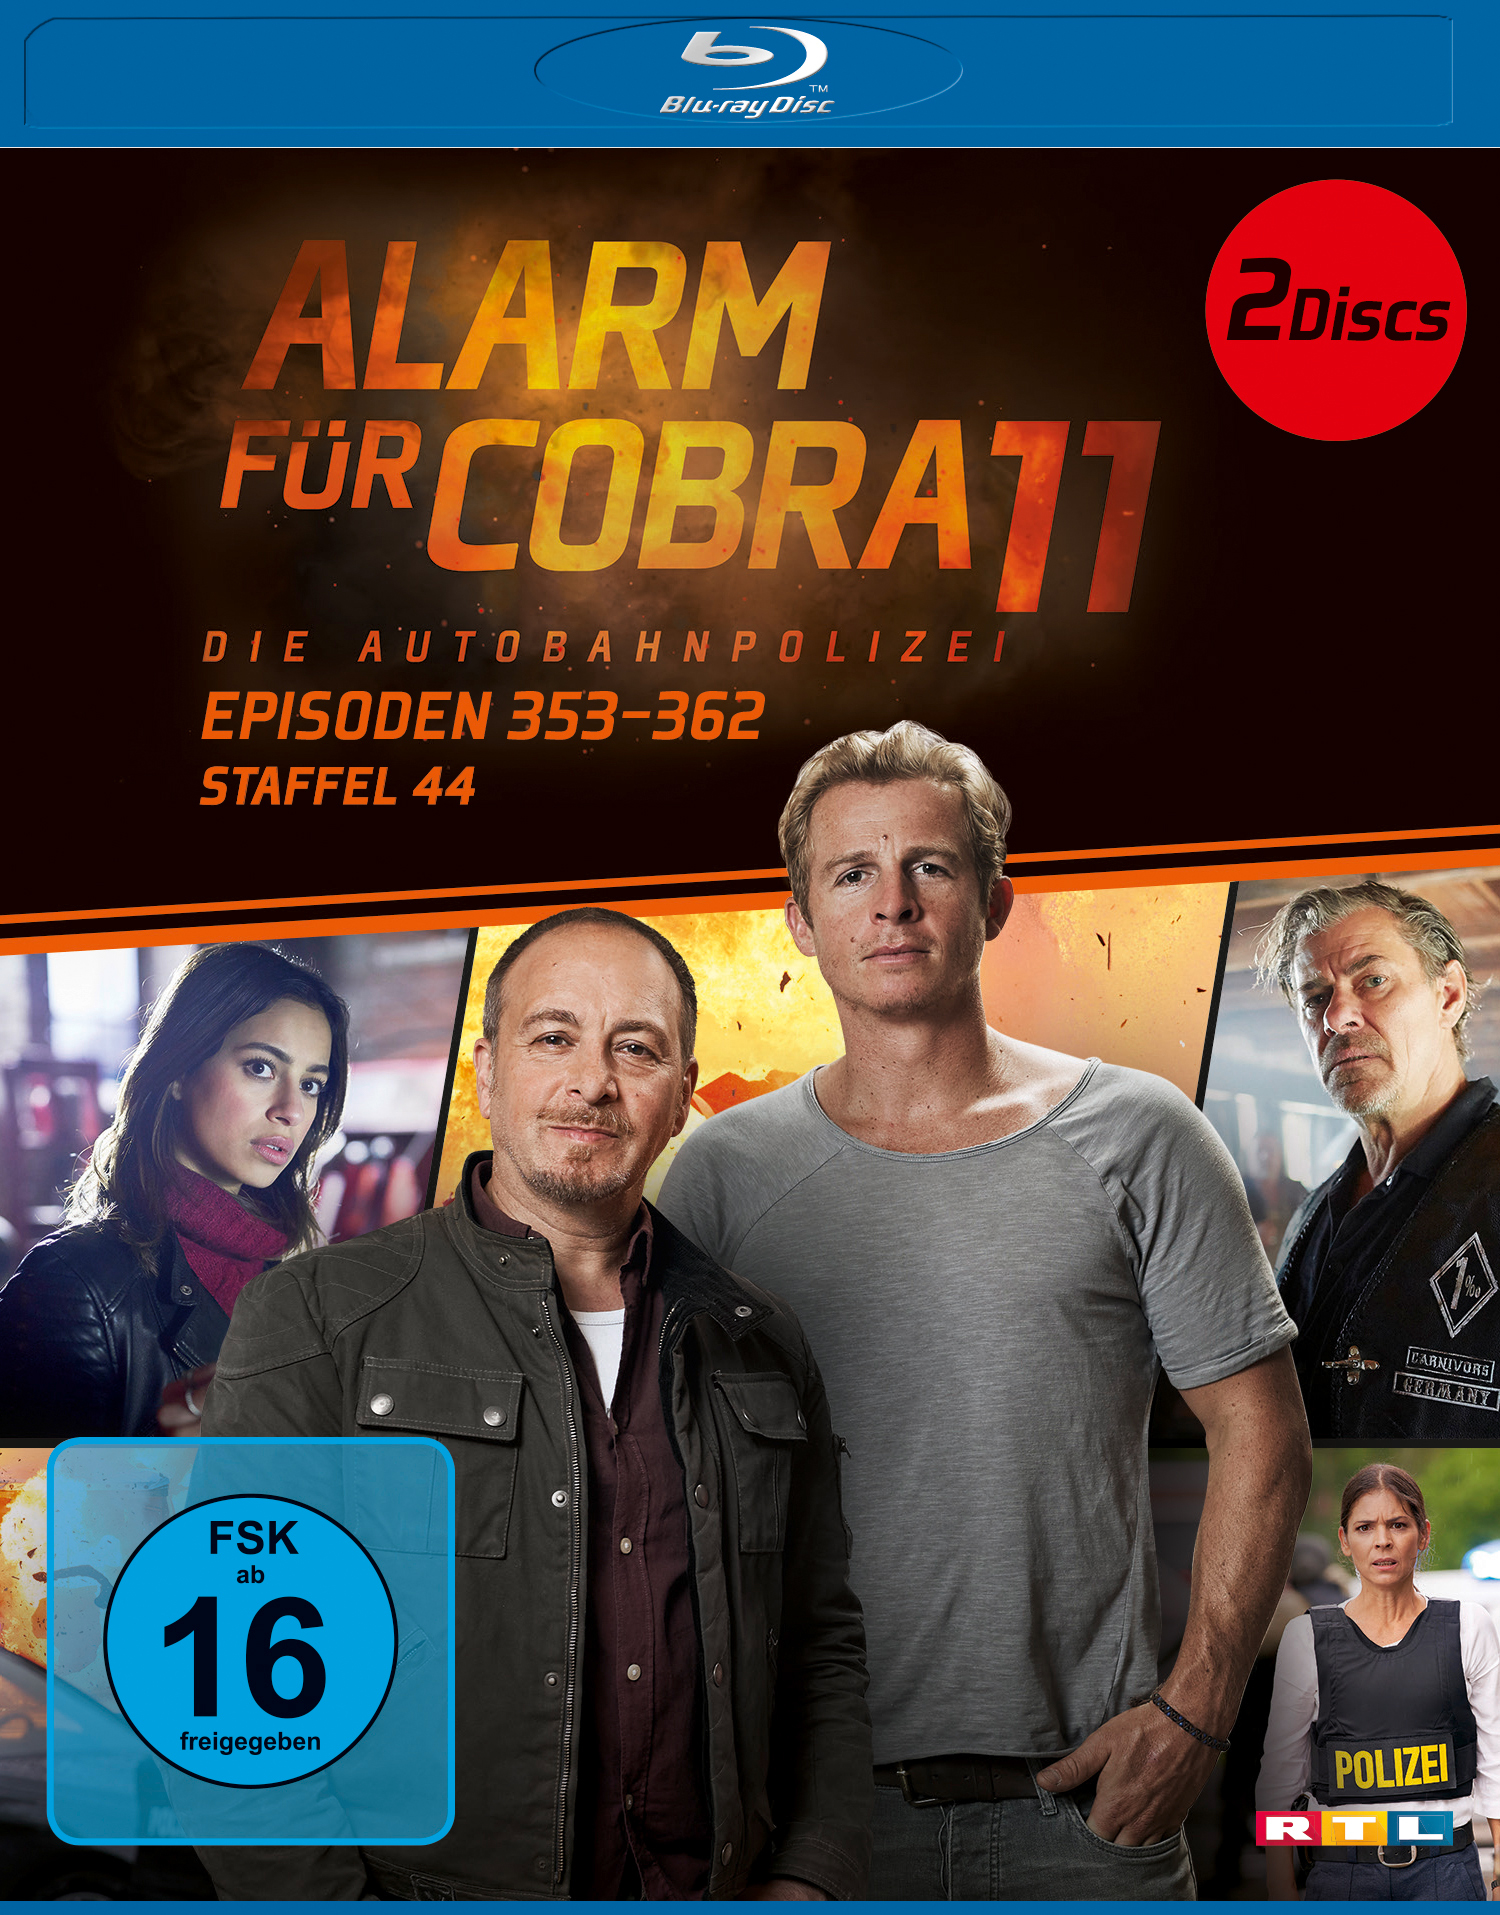 ALARM FÜR COBRA 44.STAFFEL 11 Blu-ray